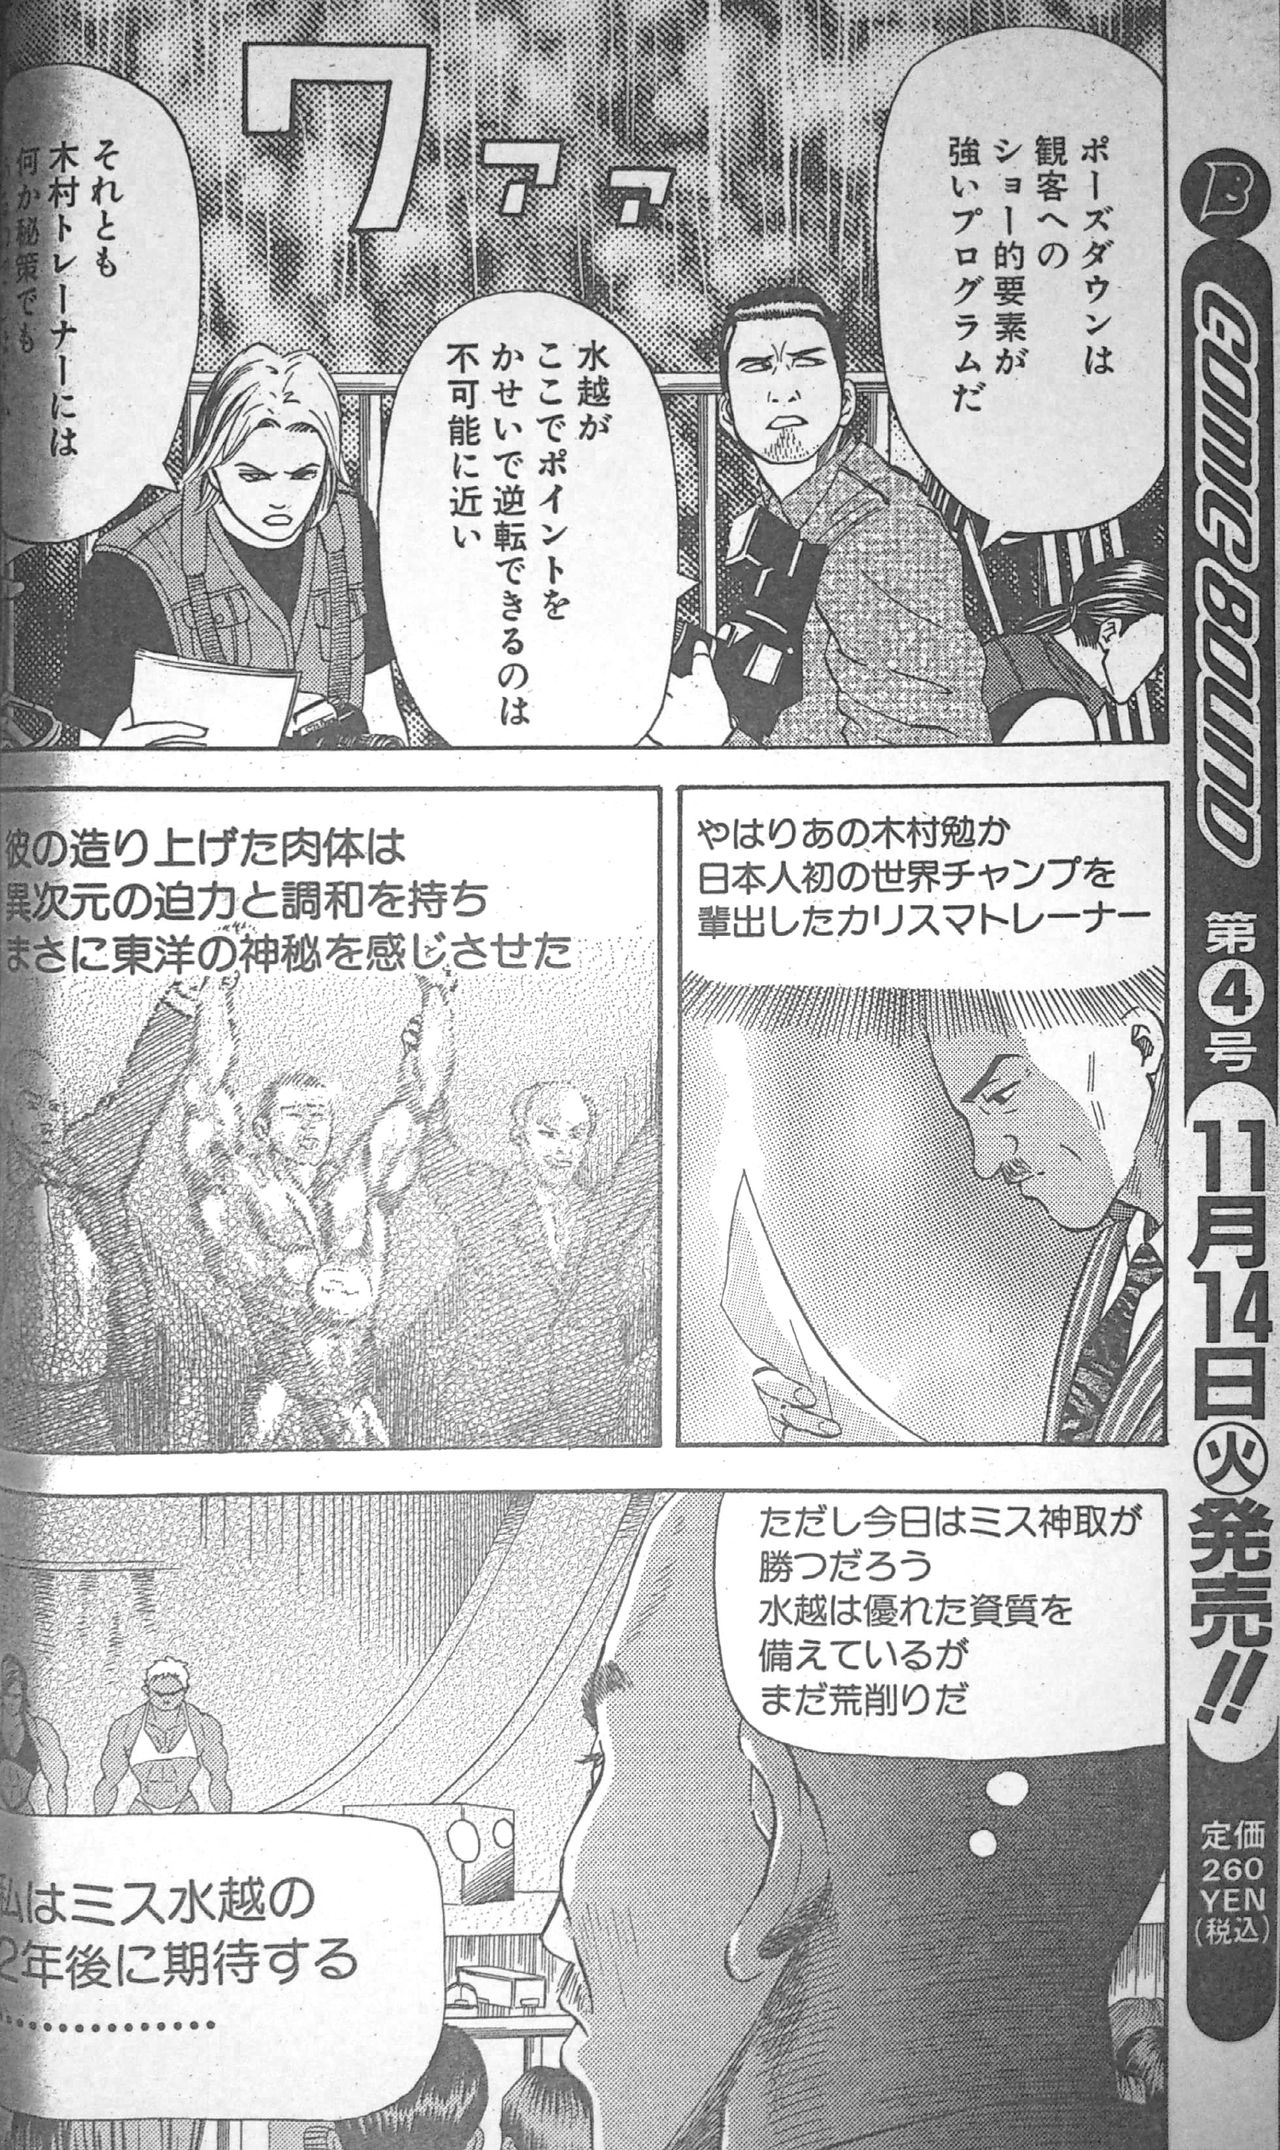 [冬木真人] マッスルストロベリー Chapter 3 (コミックバウンド 2000年11月14日)